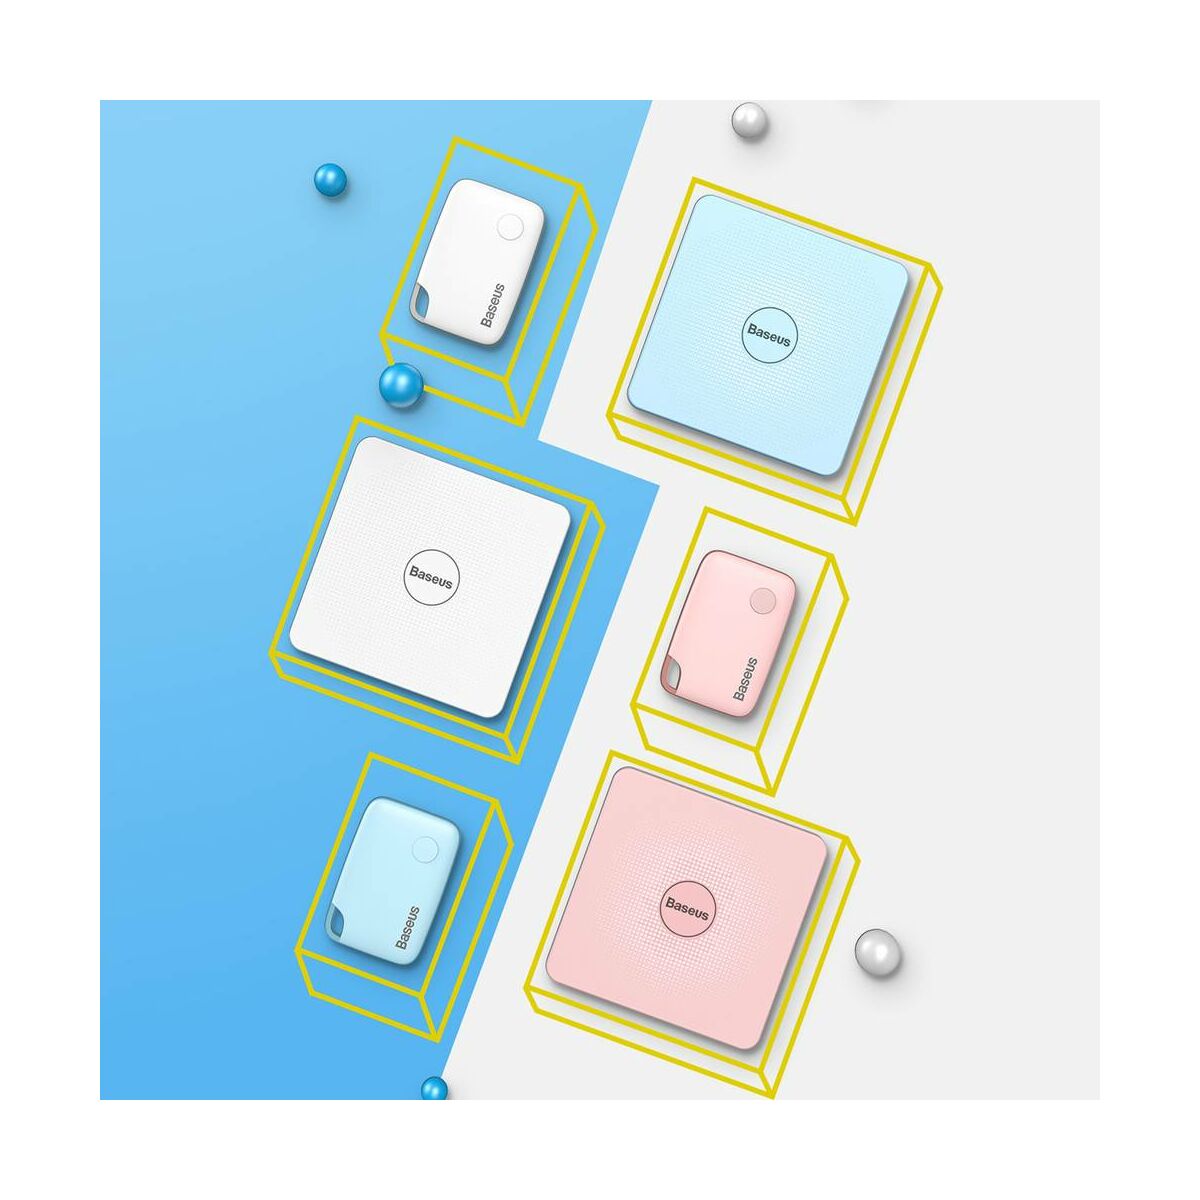 Kép 8/8 - Baseus otthon, Intelligens T1 mini lapos kártya forma, elveszett eszközök/kulcsok megtalálásához eszköz és detektor, fehér (ZLFDQT1-02)